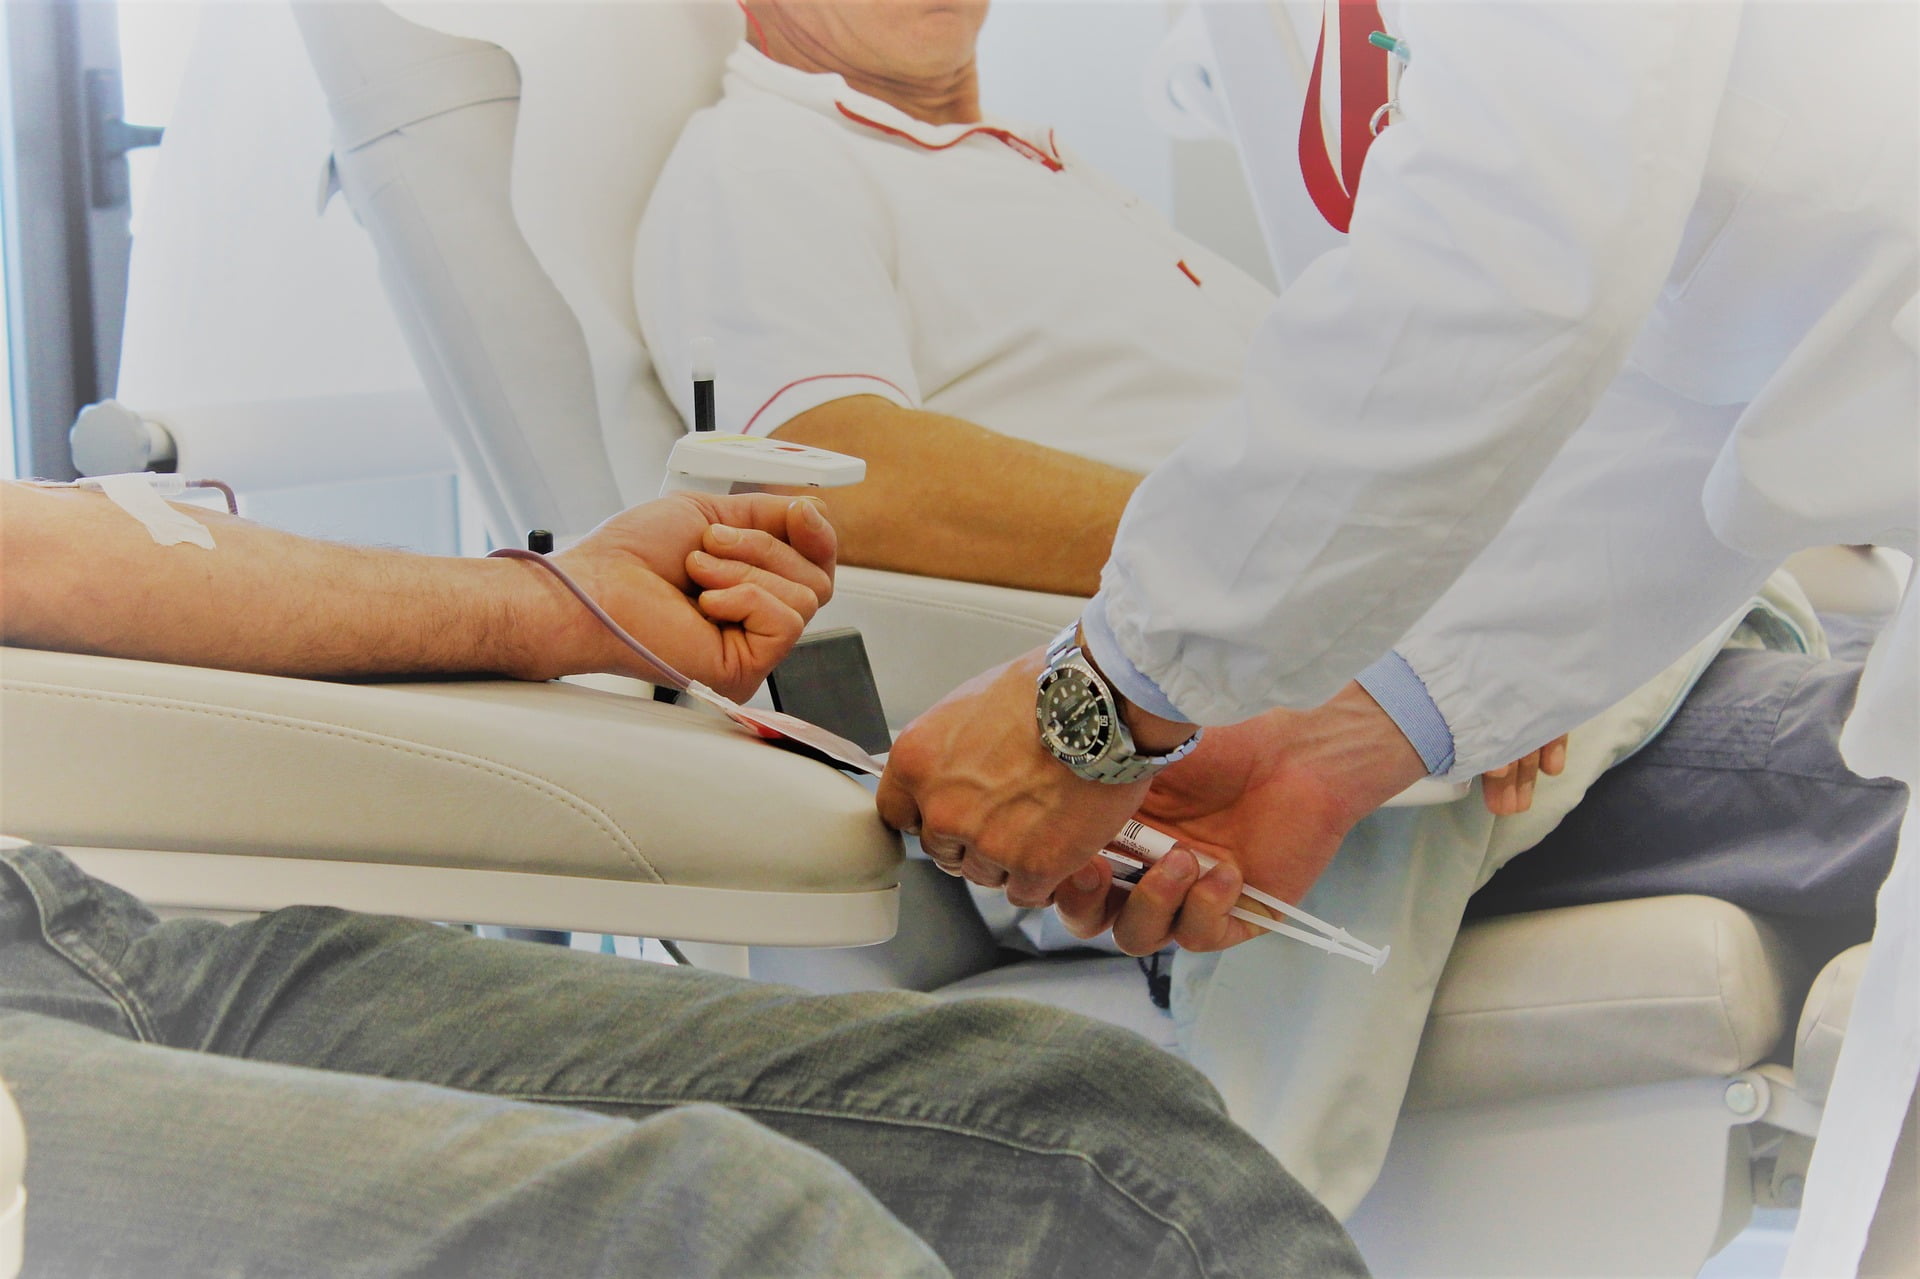 Sange contaminat:Circa 3% dintre transfuzii transmit virusul HIV